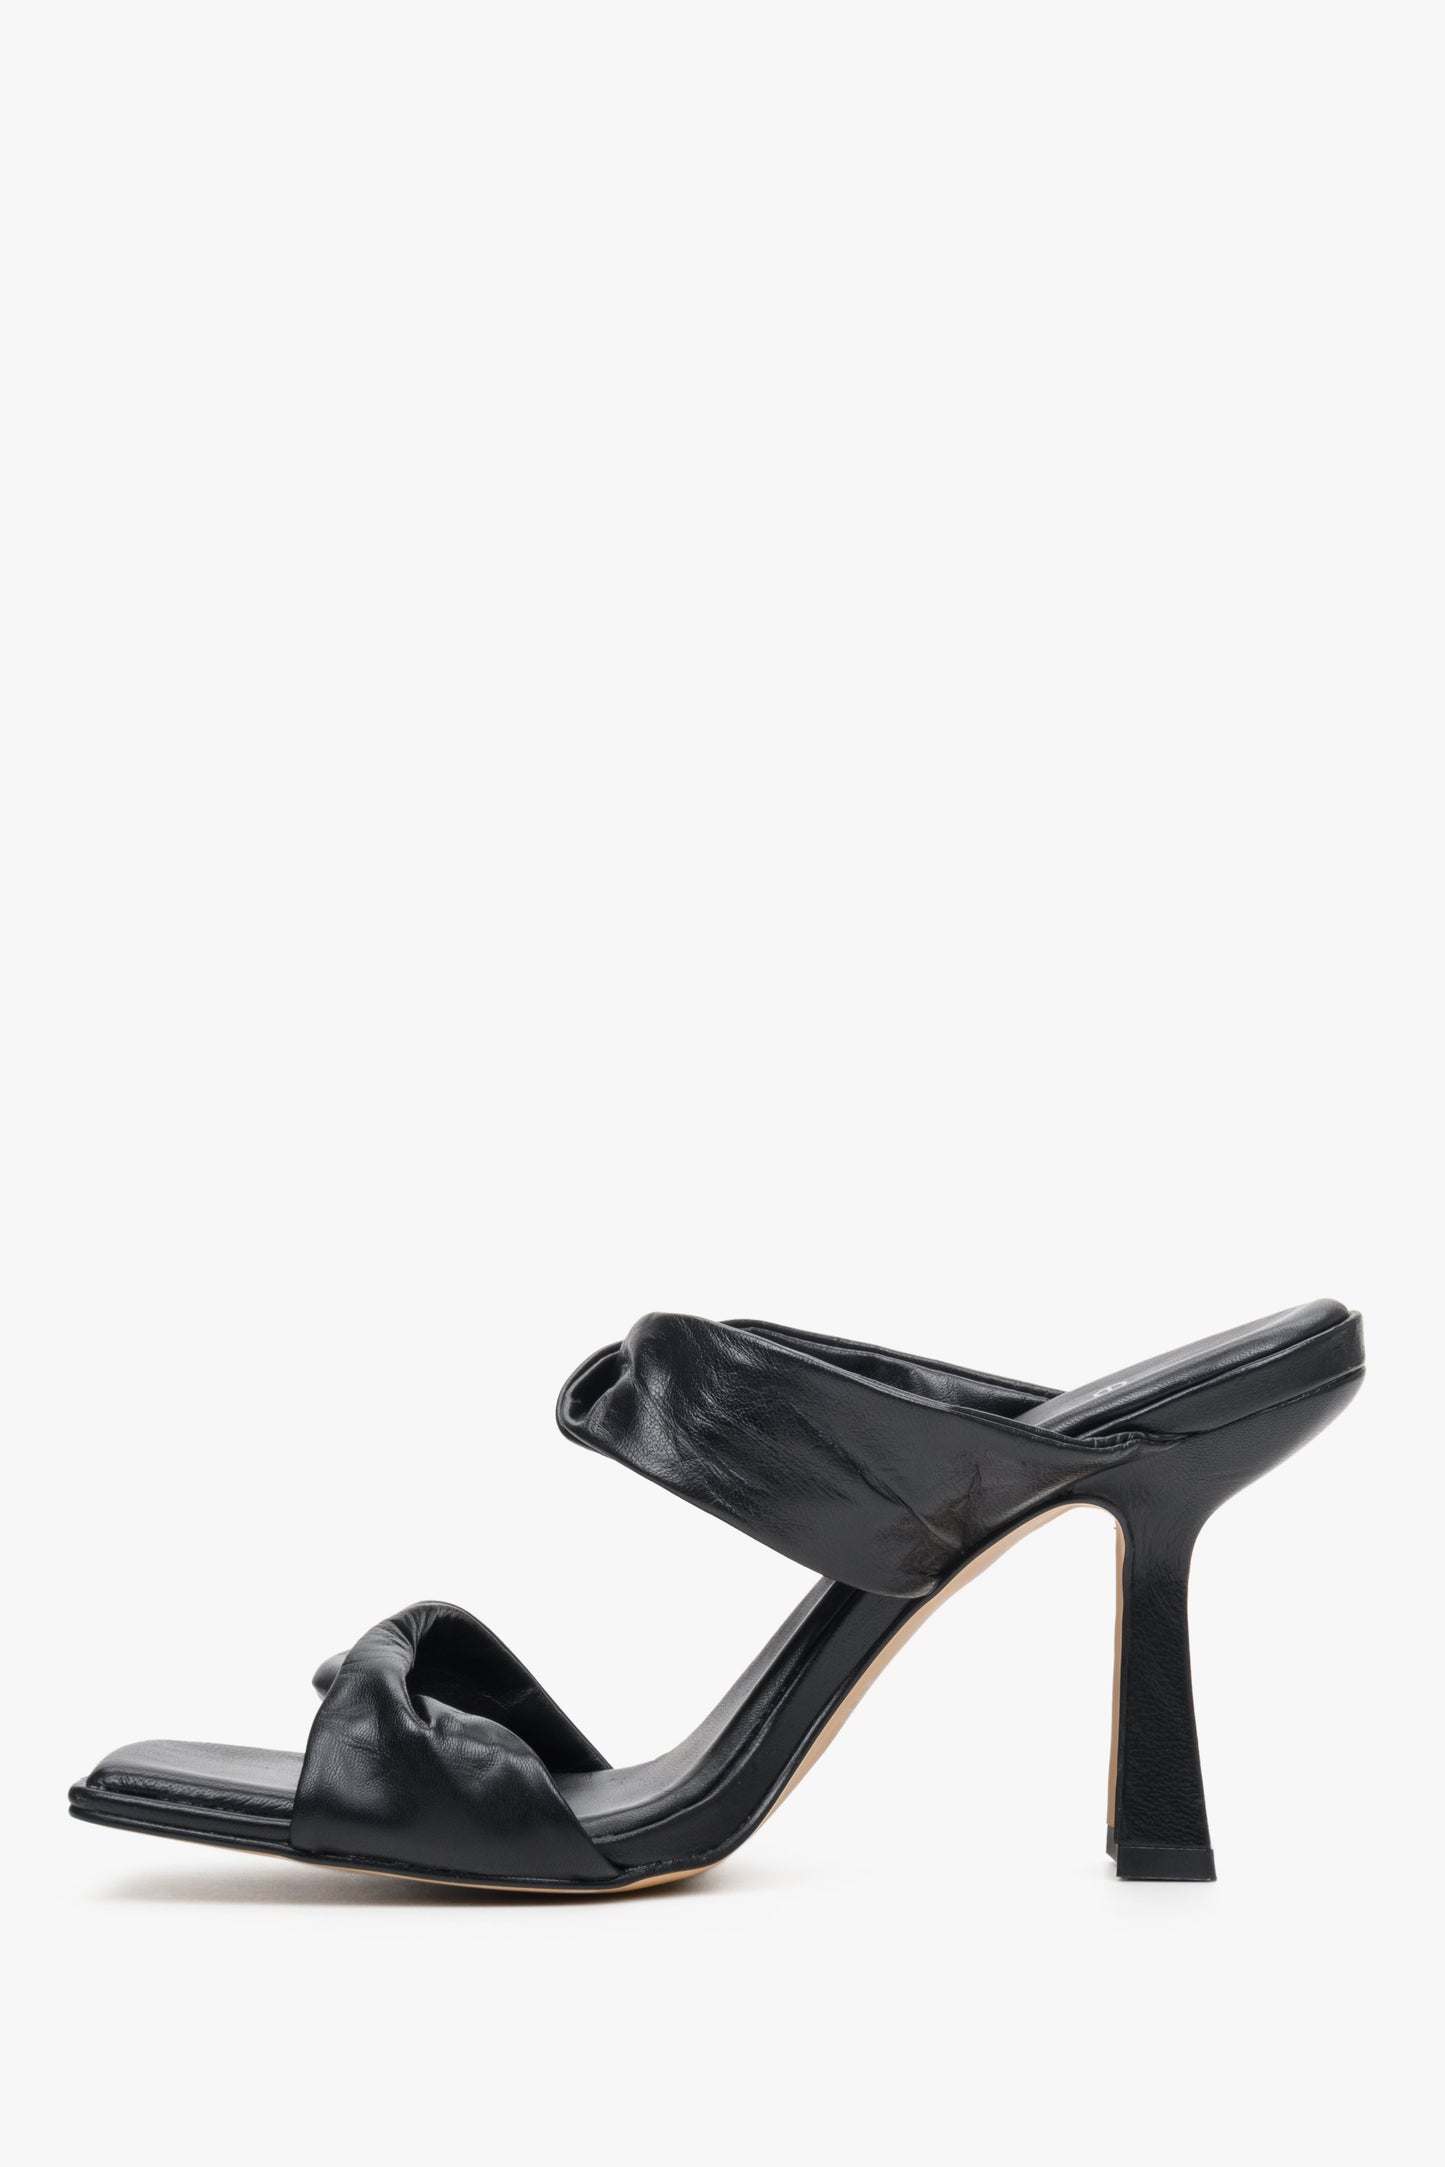 Stylowe, skórzane klapki damskie na stabilnym obcasie w kolorze czarnym marki Estro - profil buta.